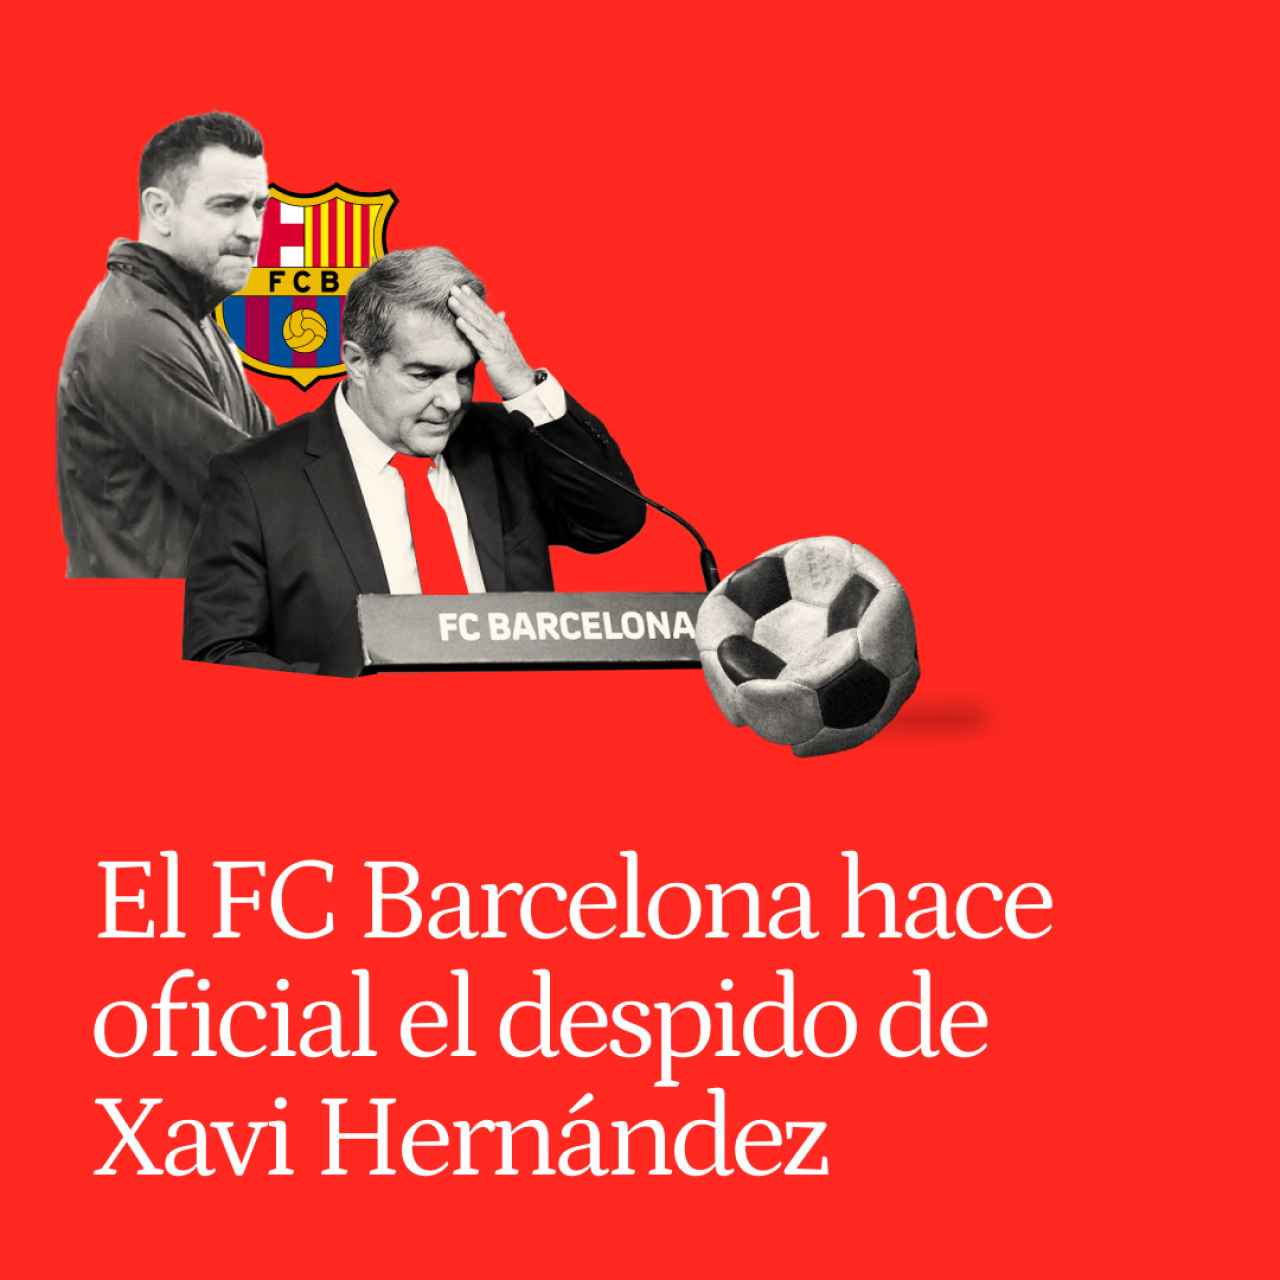 El FC Barcelona hace oficial el despido de Xavi Hernández